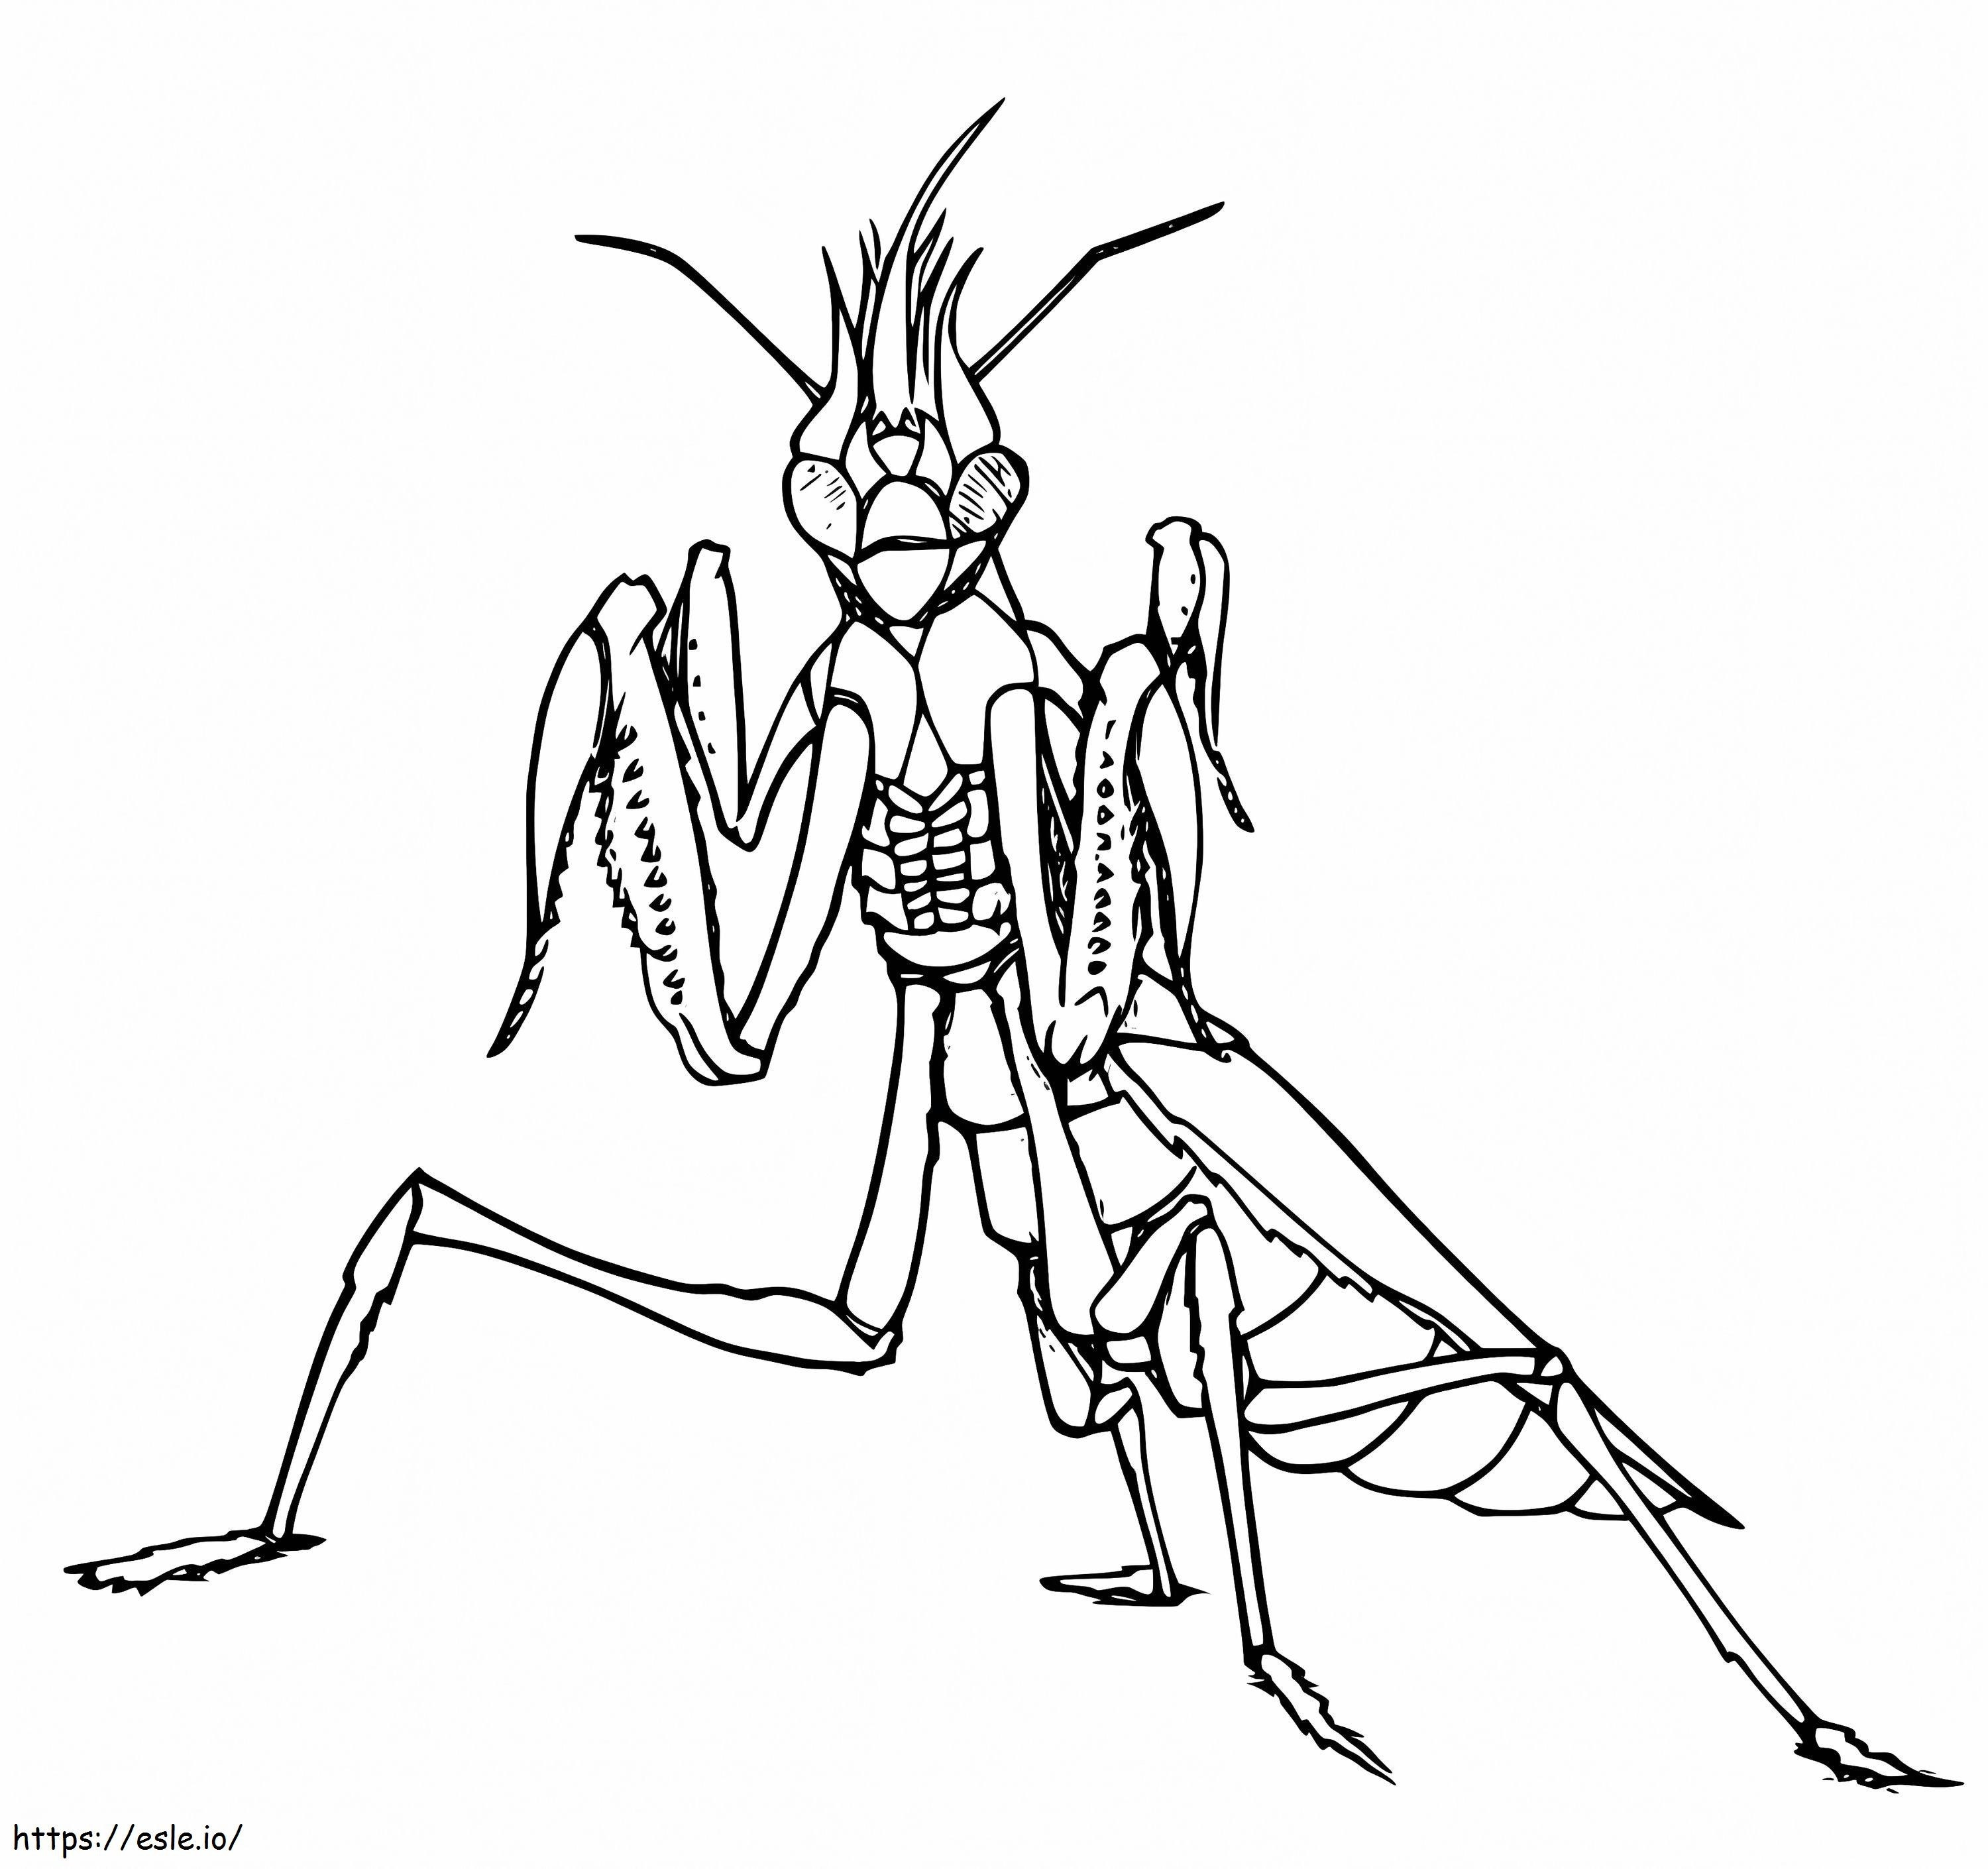 Creepy Praying Mantis coloring page